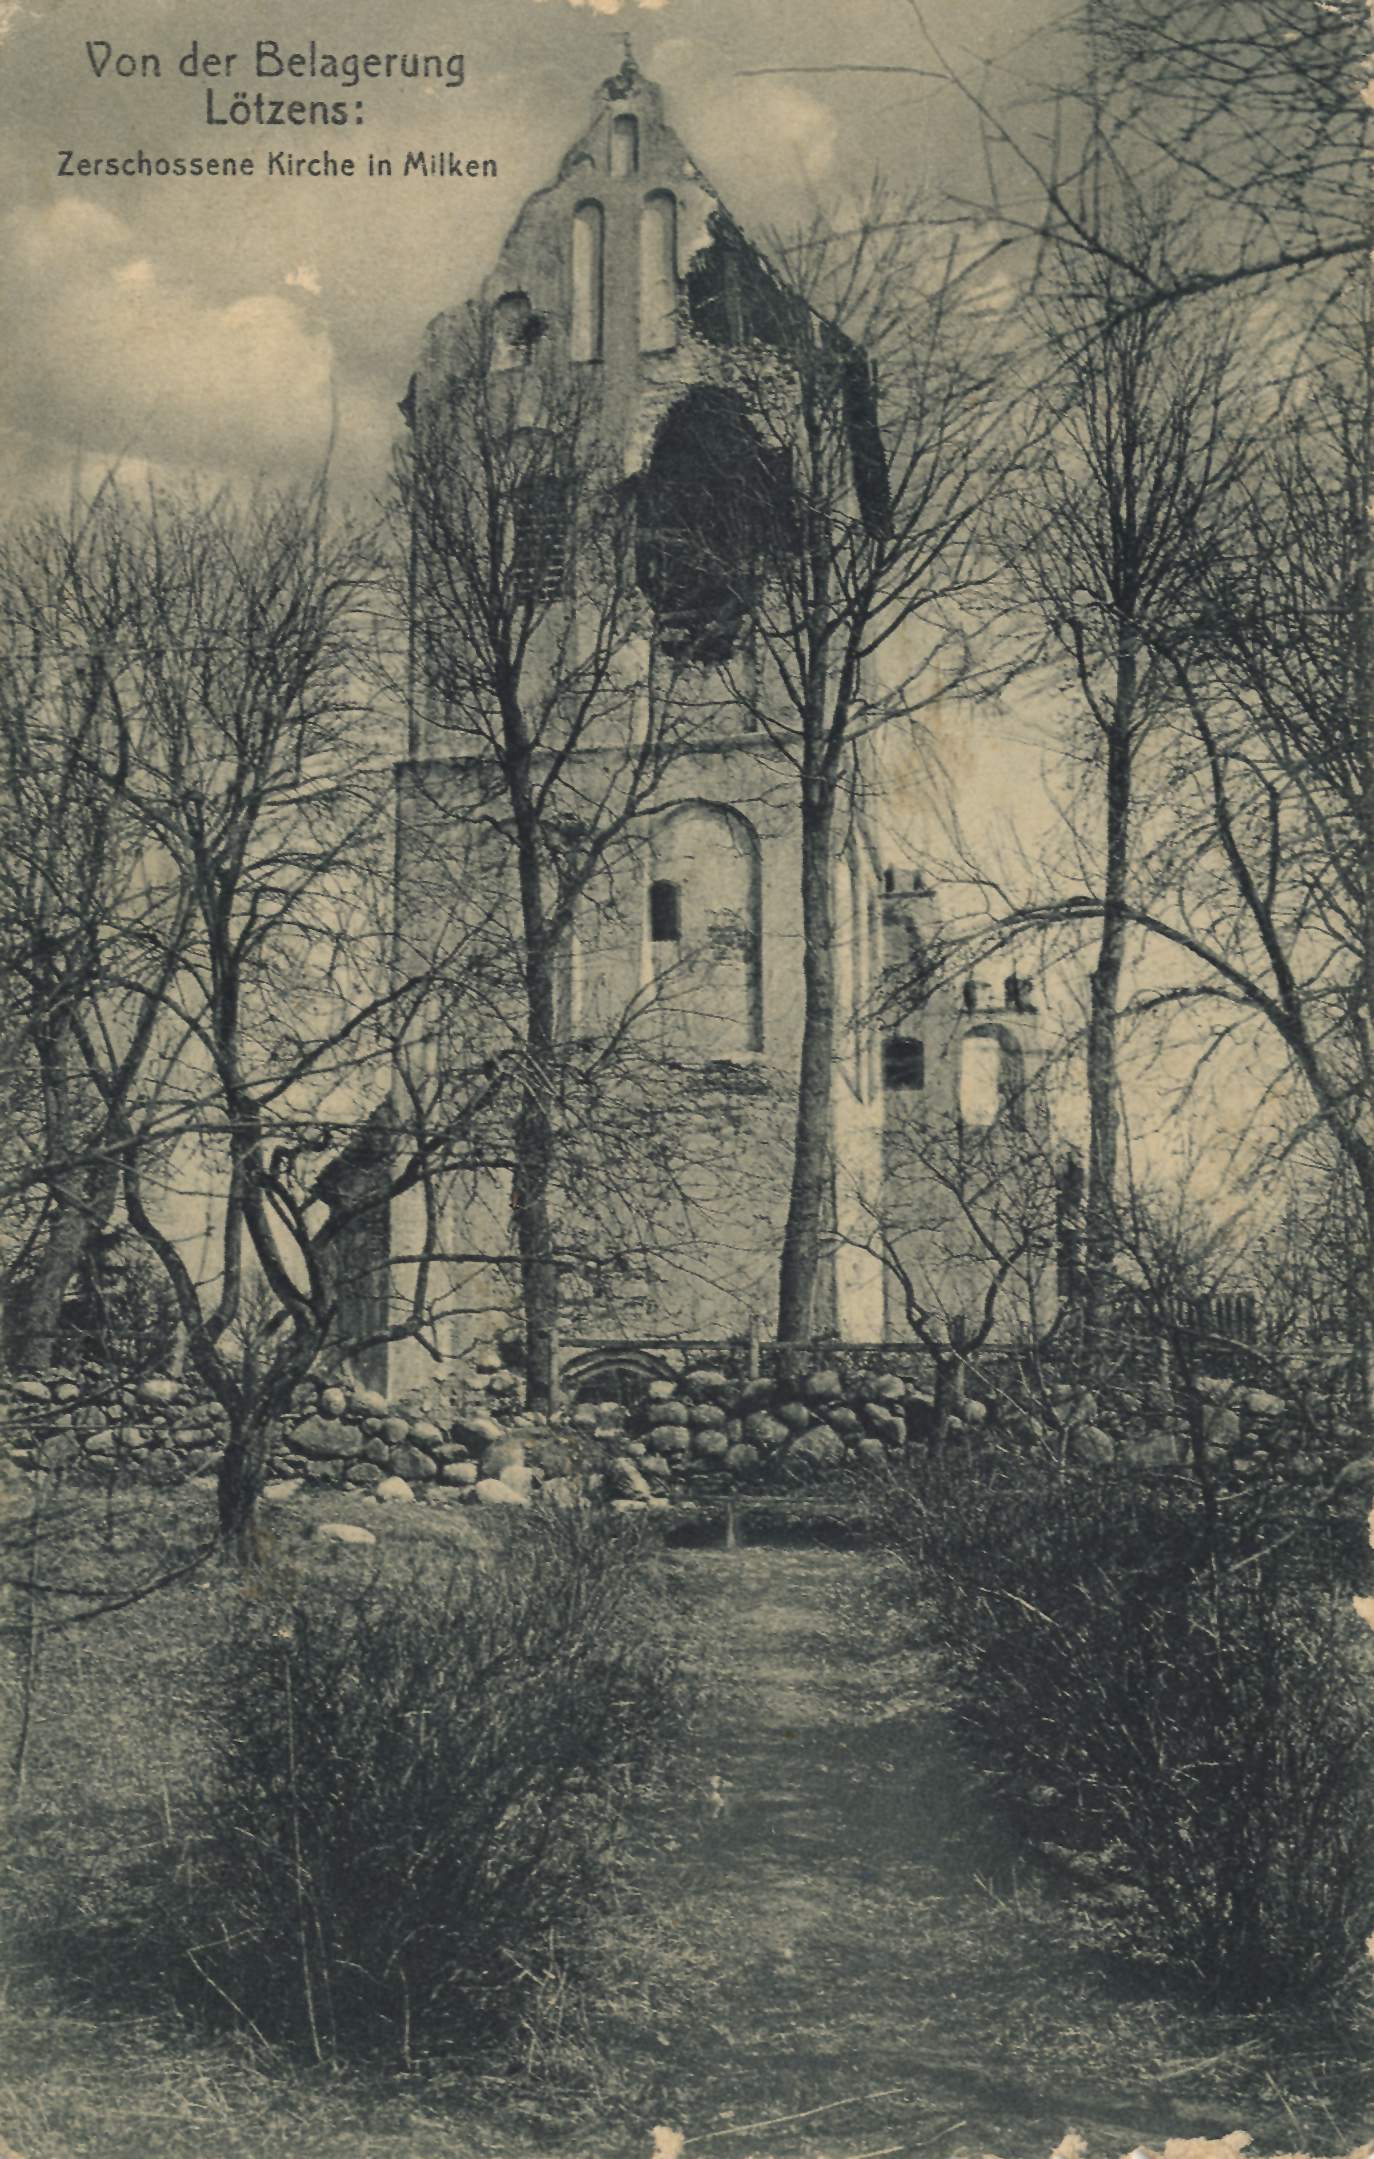 Kościół w Miłkach w 1915 roku  Źródło: http://images.zeno.org/Ansichtskarten/I/big/AK06314a.jpg, dostęp 15 września 2013